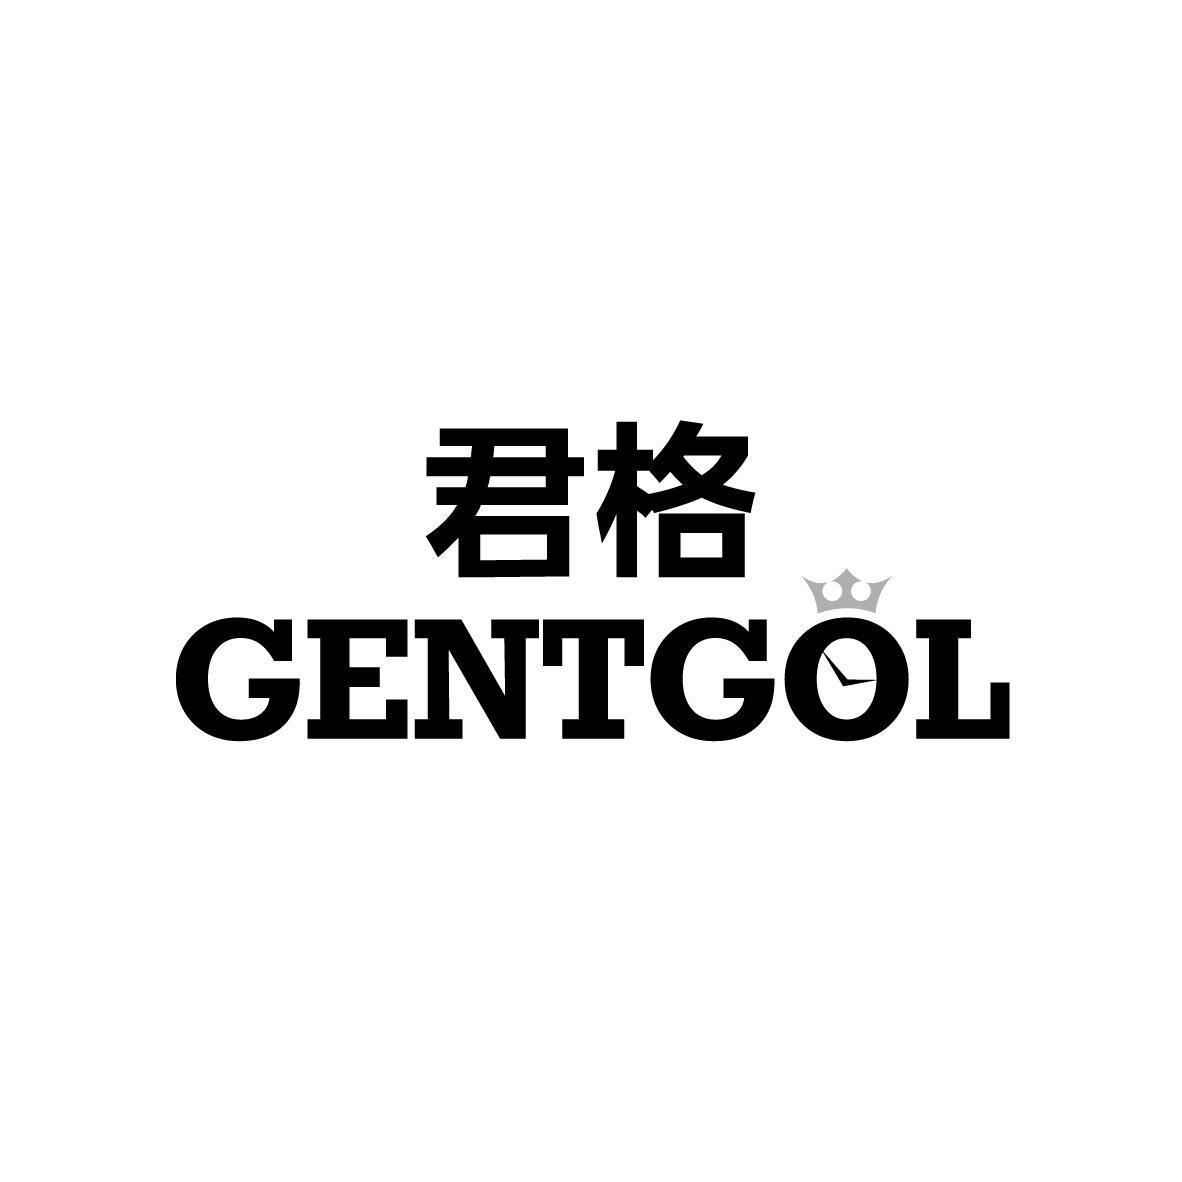  GENTGOL